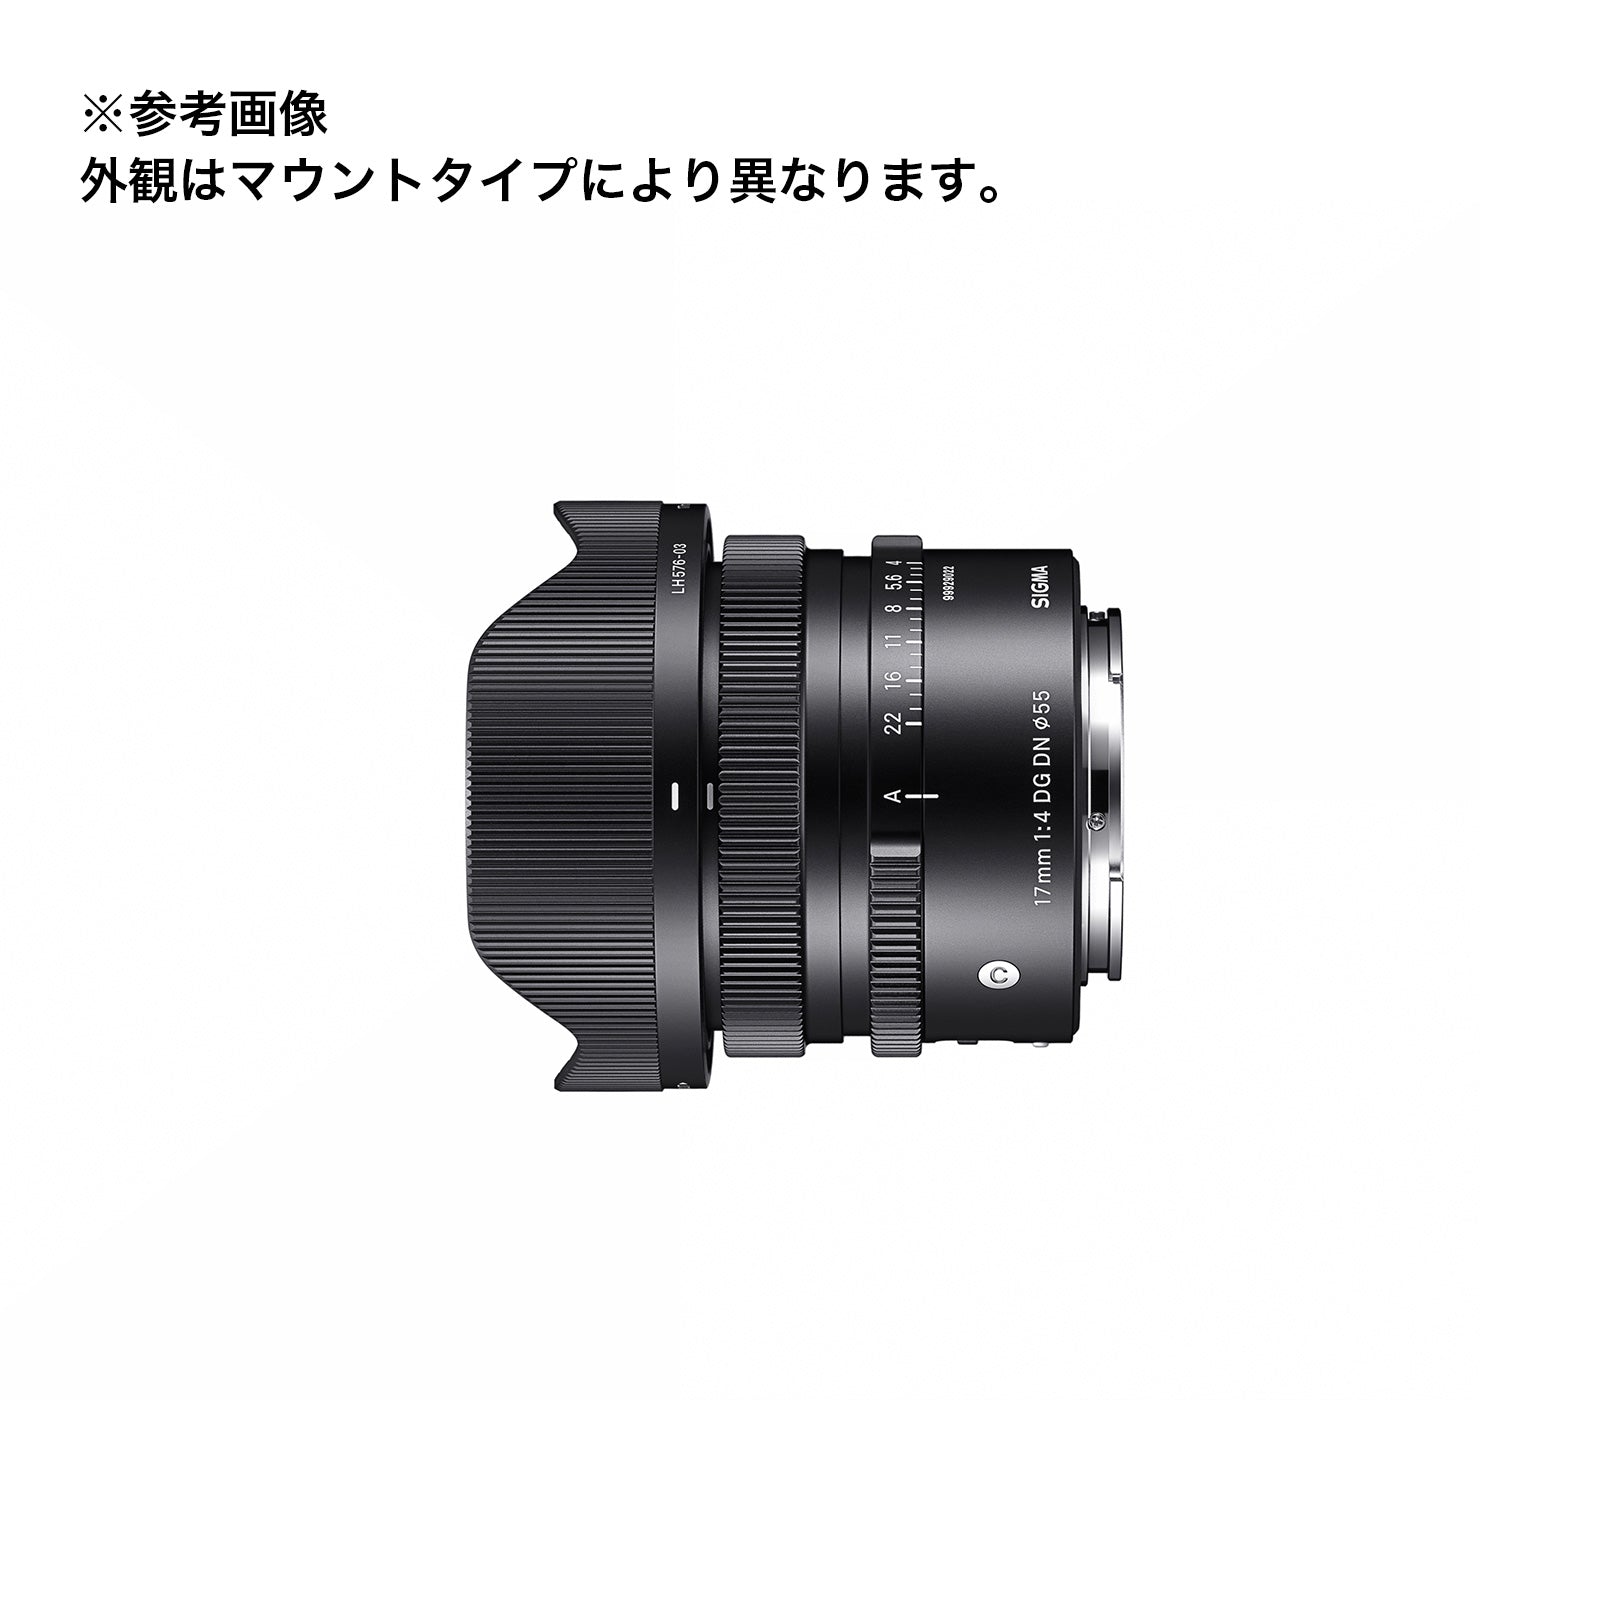 SIGMA(シグマ) ミラーレスカメラ用単焦点レンズ 17mm F4 DG DN